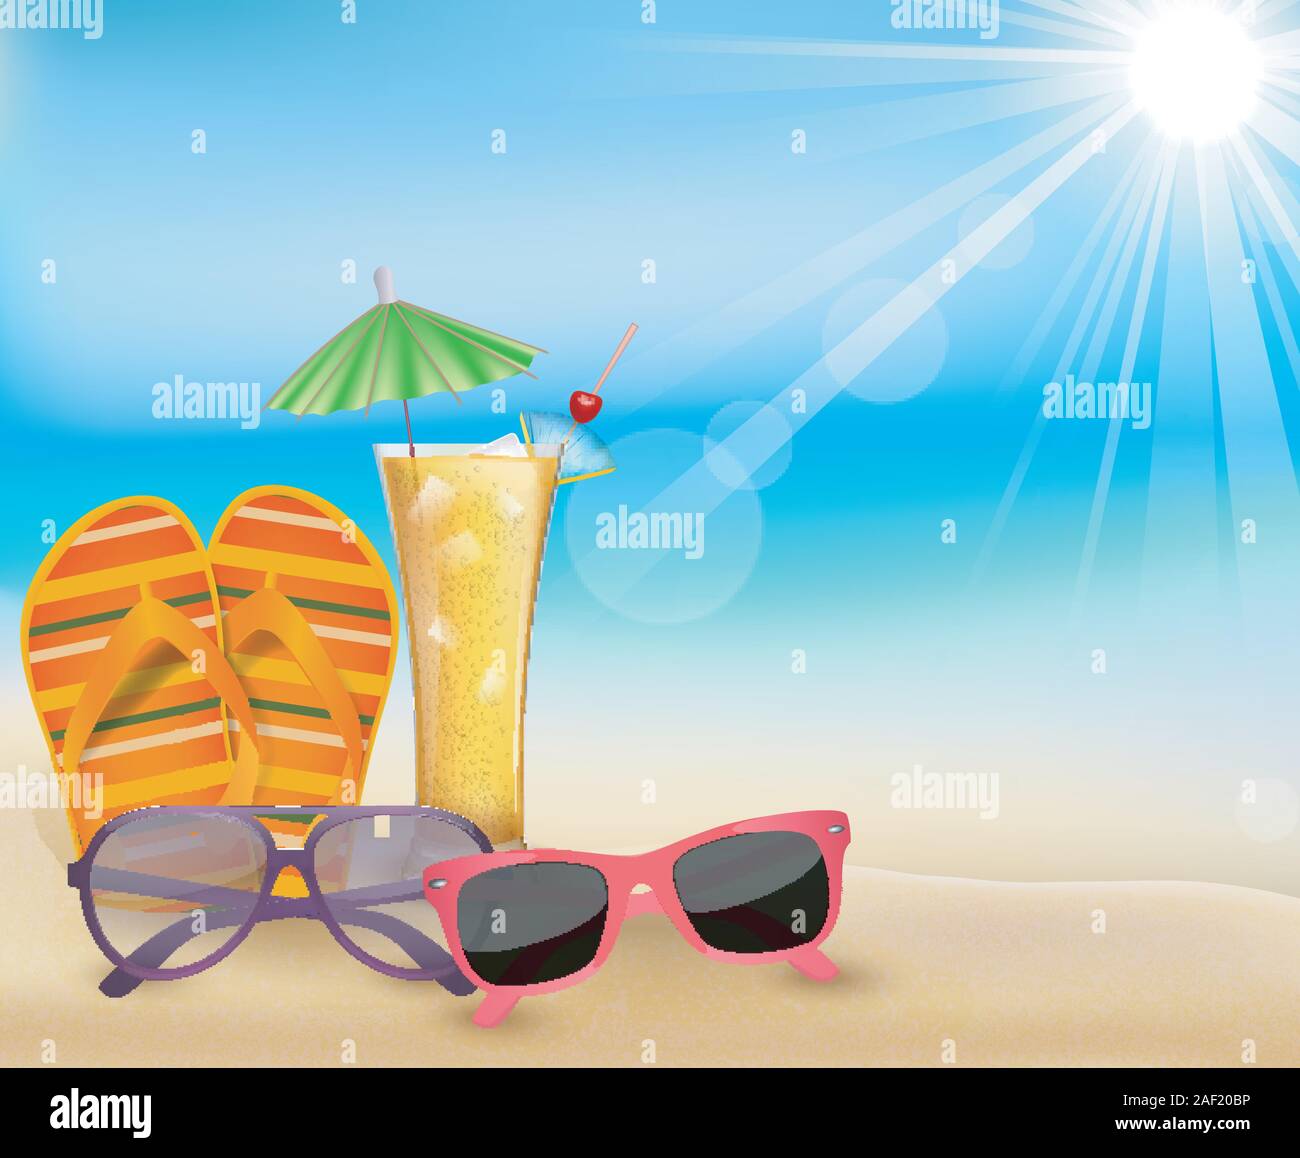 Illustration of Summertime  in beach Stock Vector